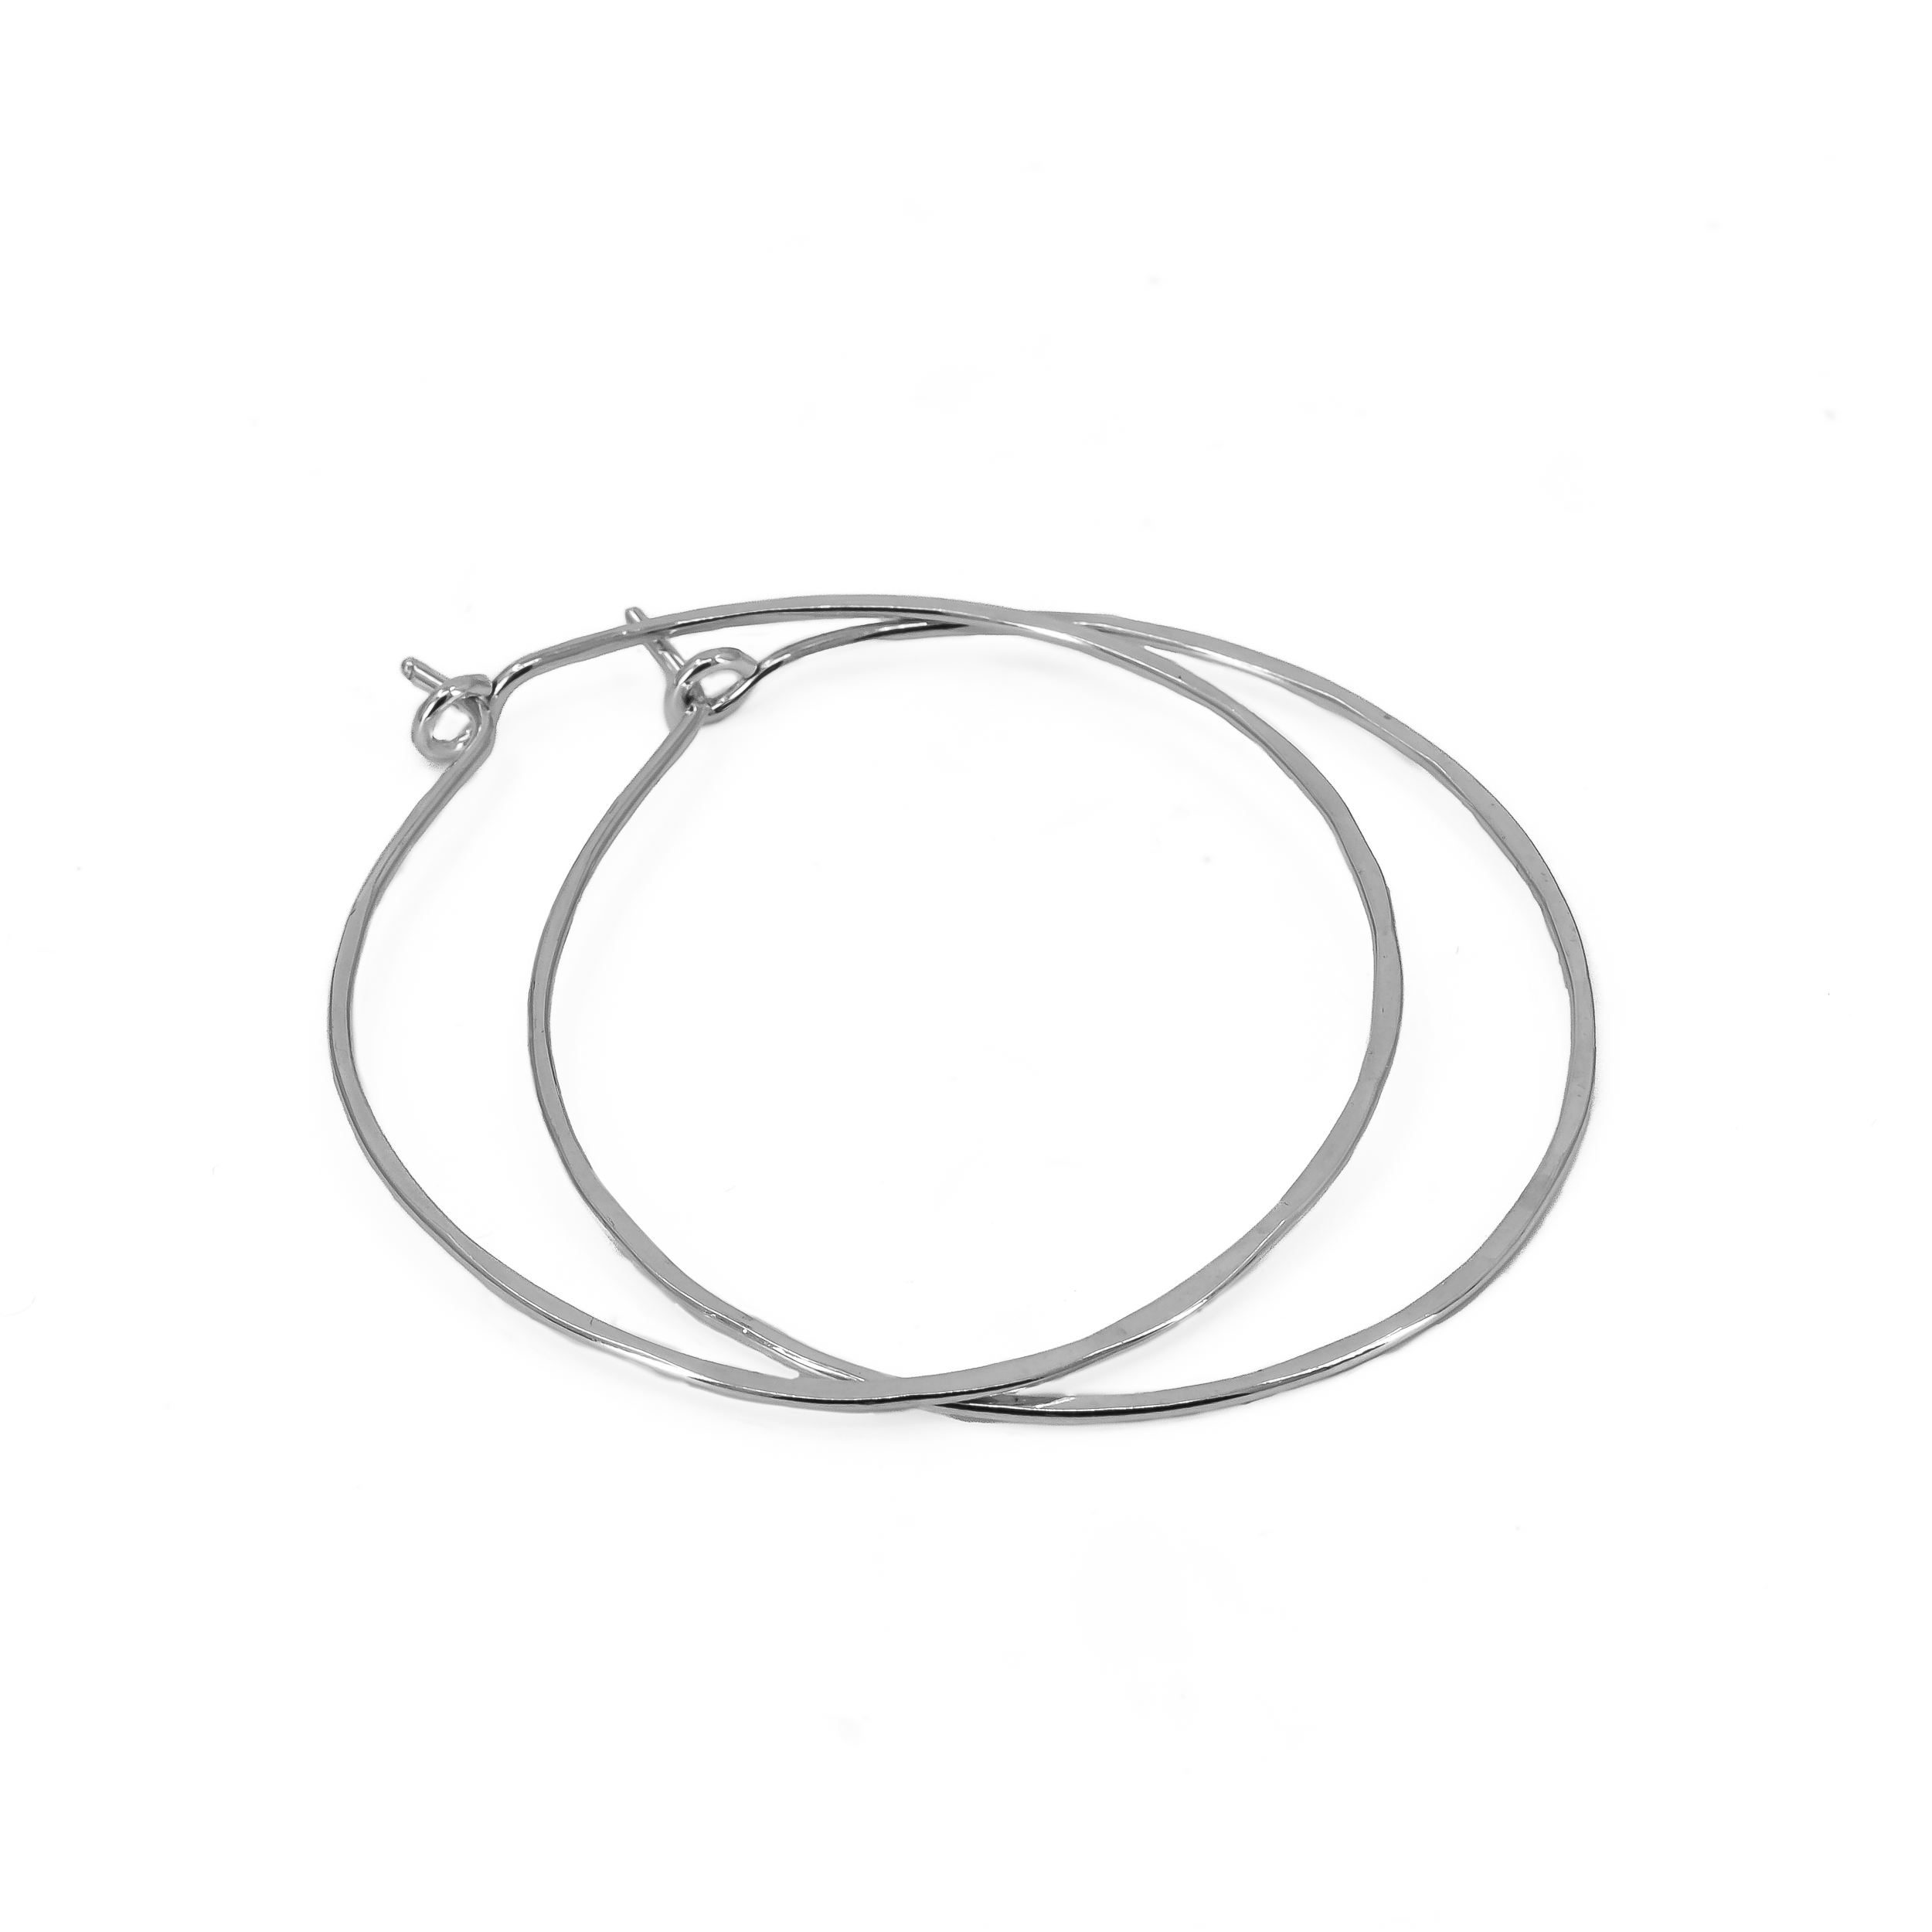 Large 1.75 inch sterling silver hoop earrings